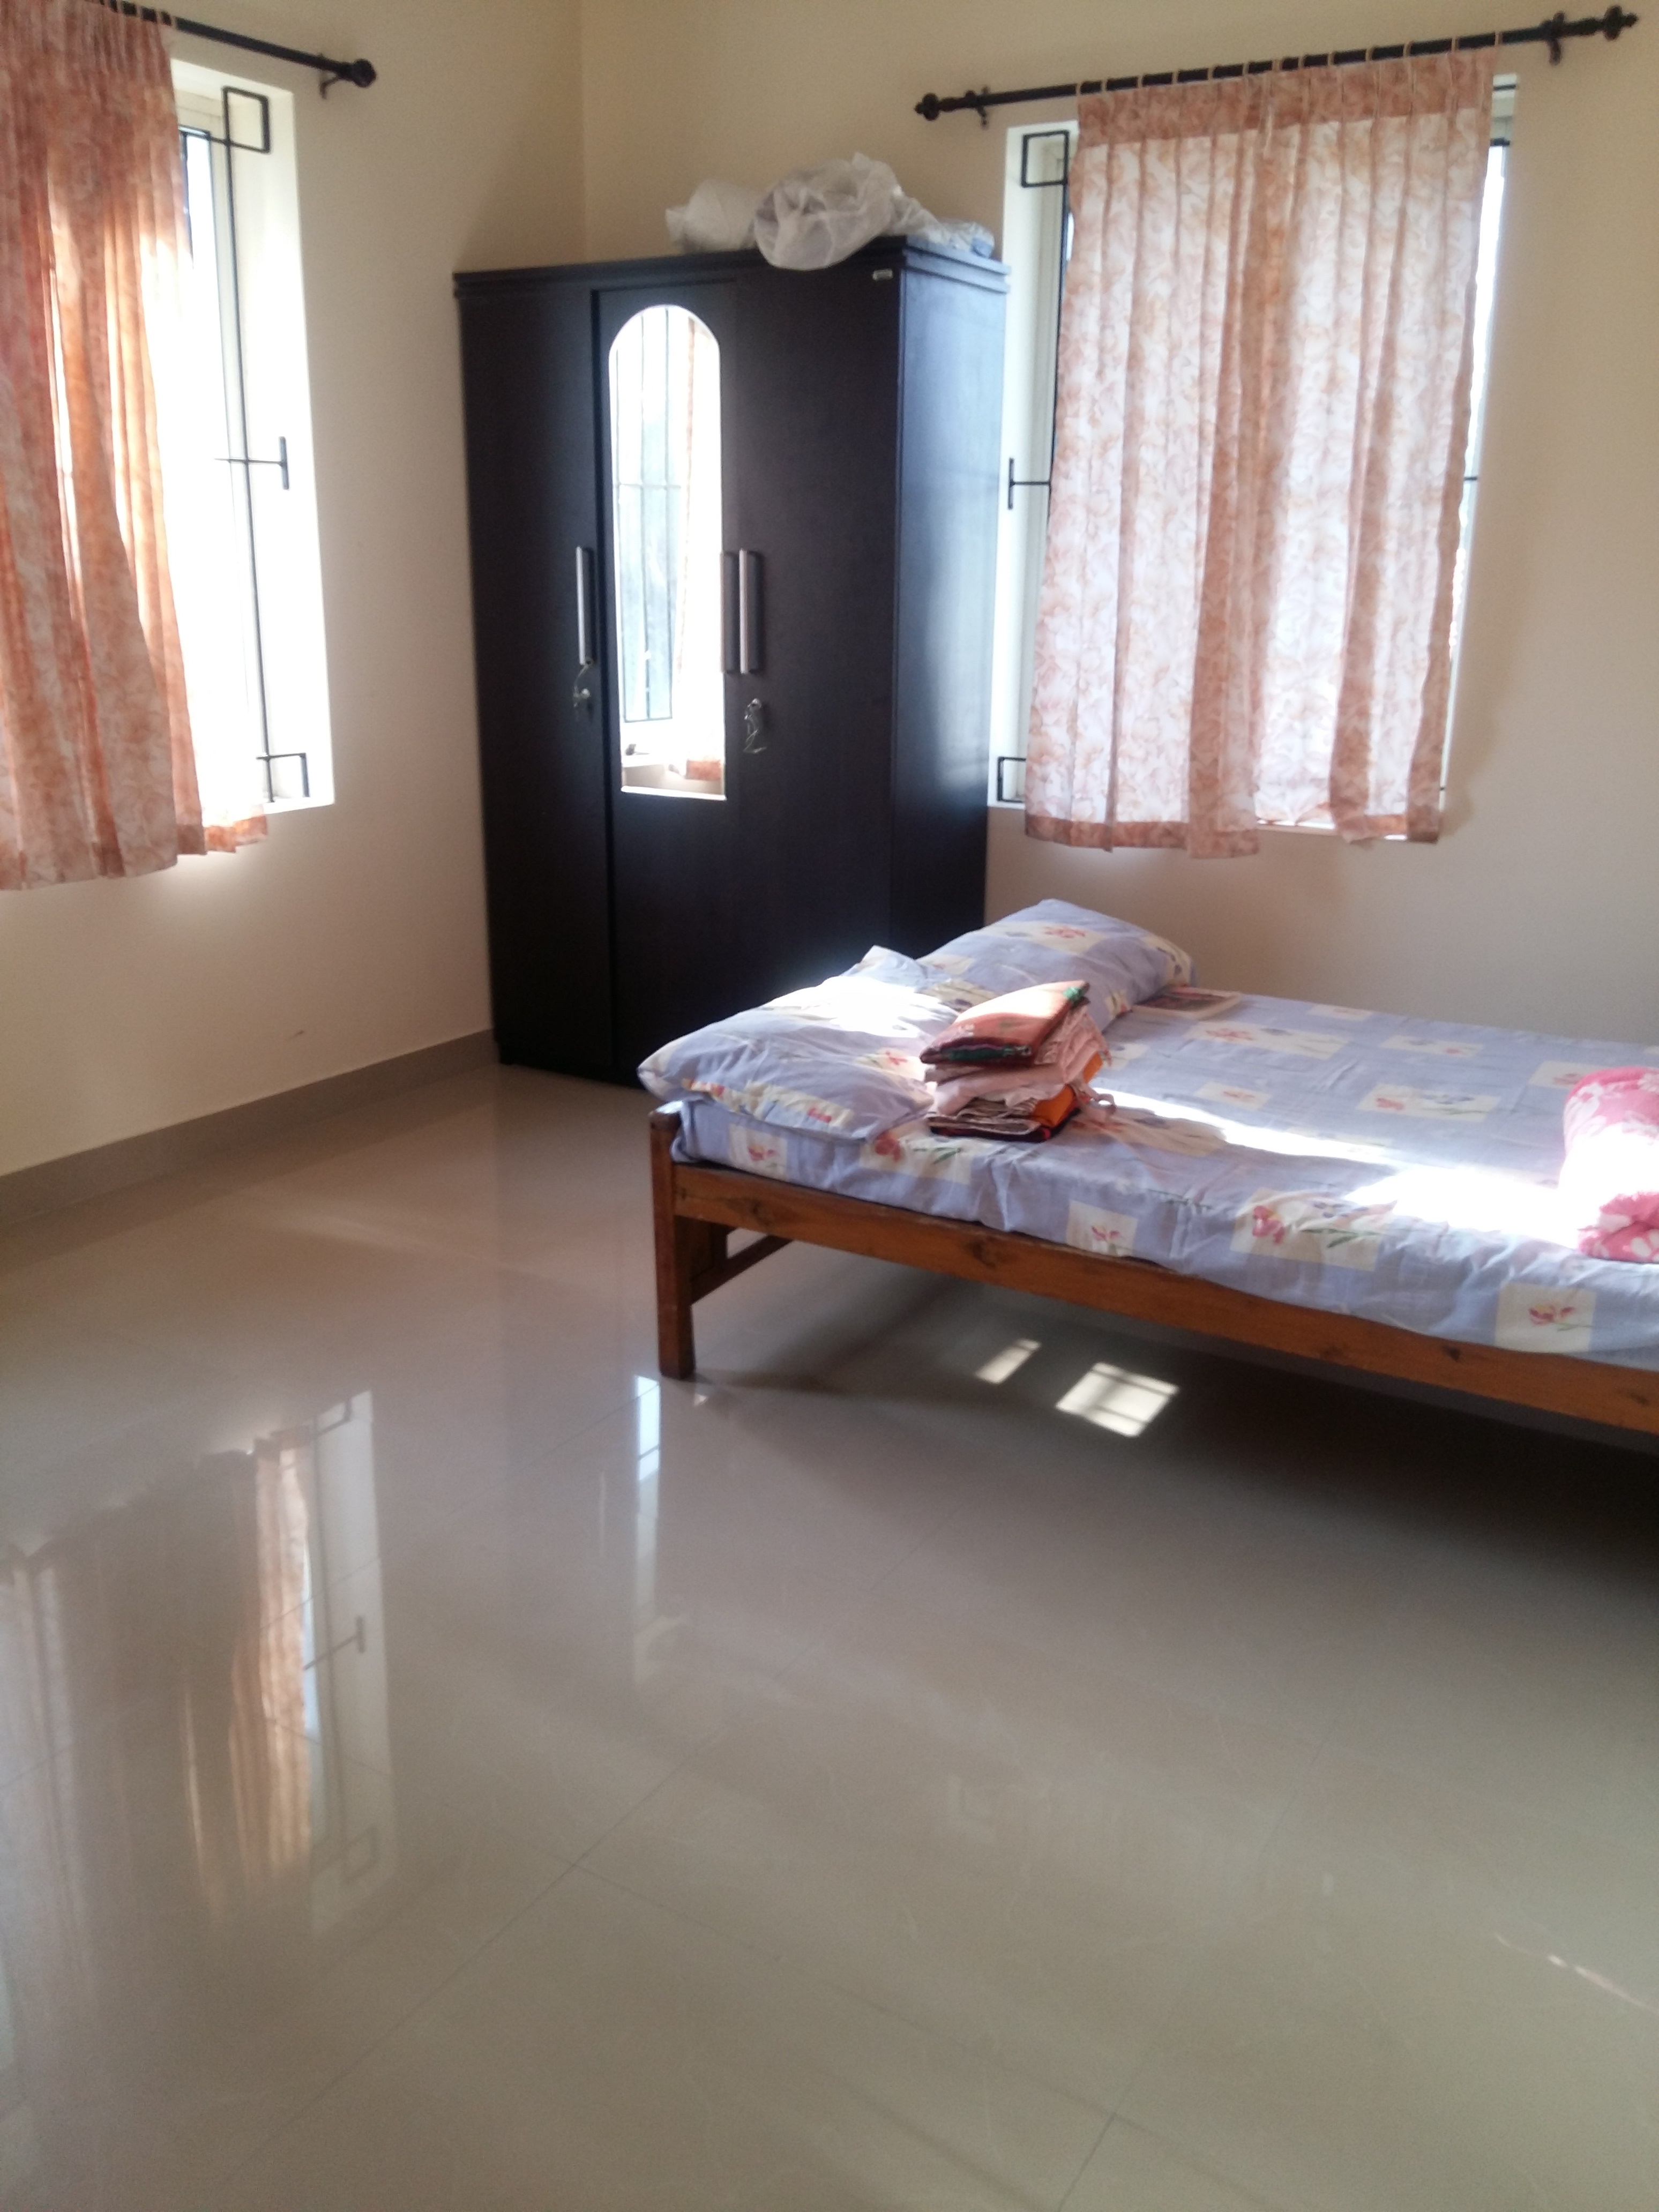 2 Bed Room Flat For Sale – Crescent Mansa – Kozhikode